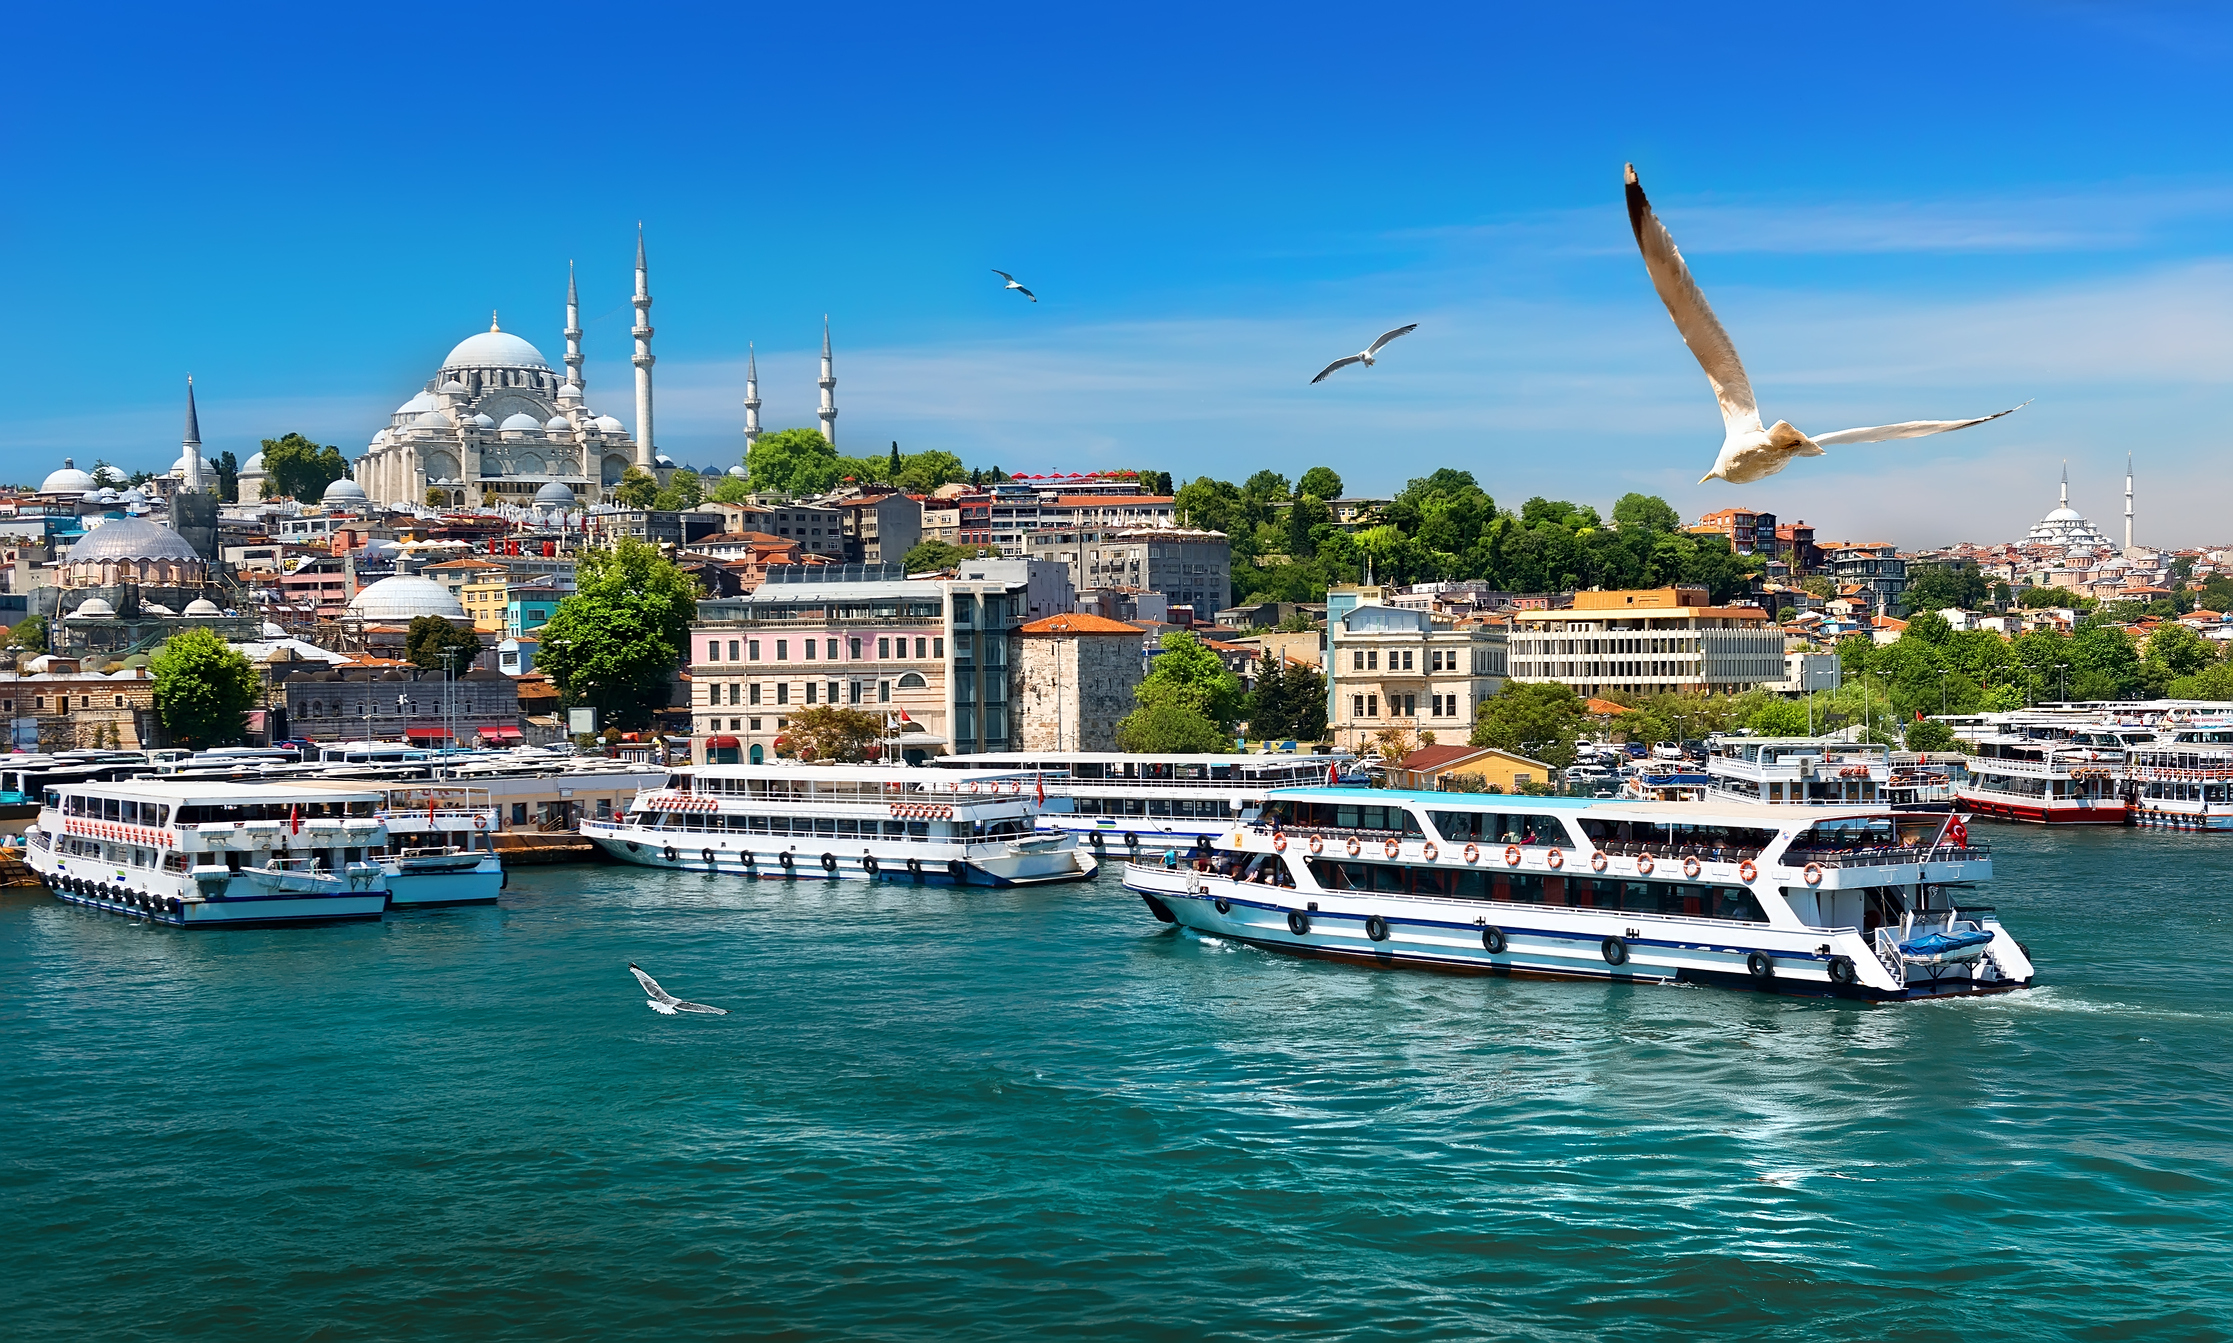 Turkish boats